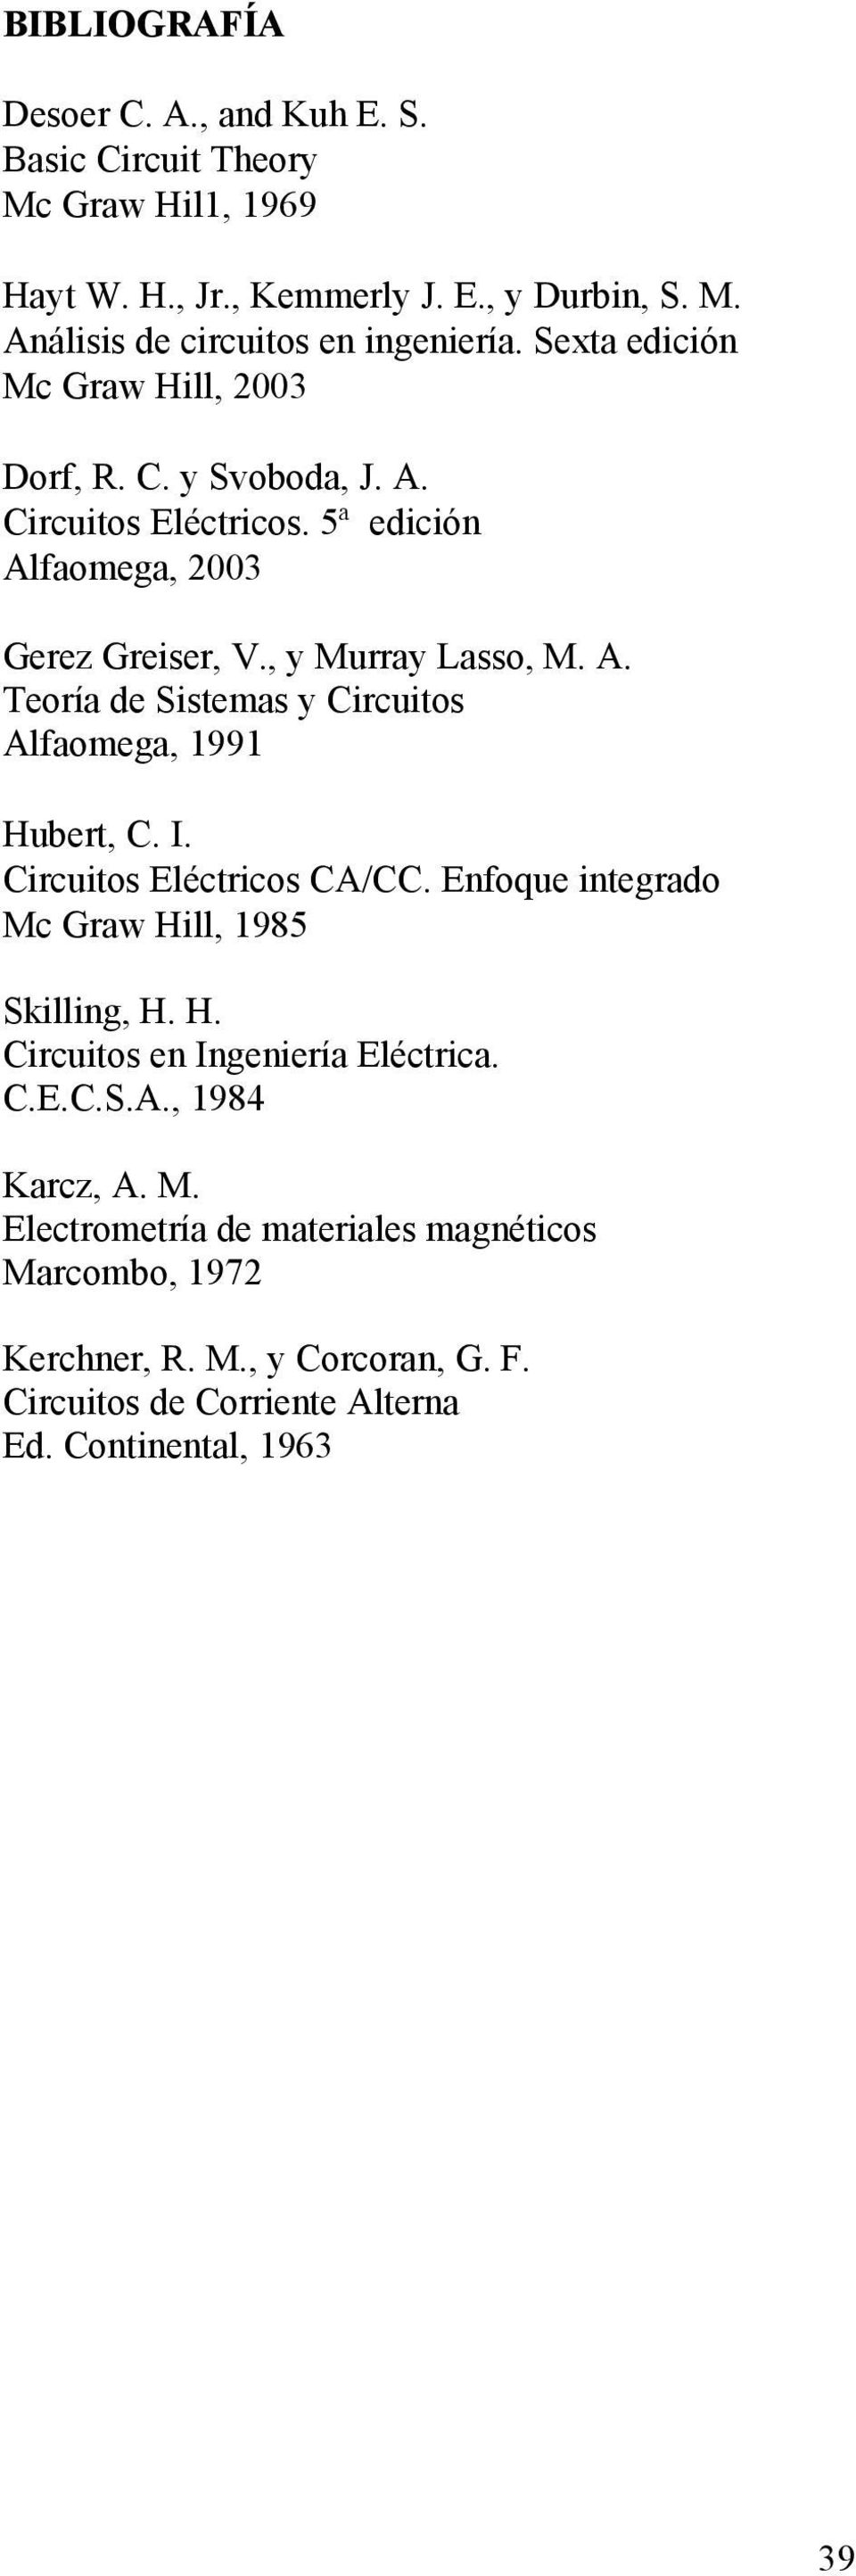 I. ircuitos Eléctricos A/. Enfoque integrdo Mc Grw Hill, 1985 Skilling, H. H. ircuitos en Ingenierí Eléctric..E..S.A., 1984 Krcz, A. M. Electrometrí de mteriles mgnéticos Mrcombo, 1972 Kerchner, R.